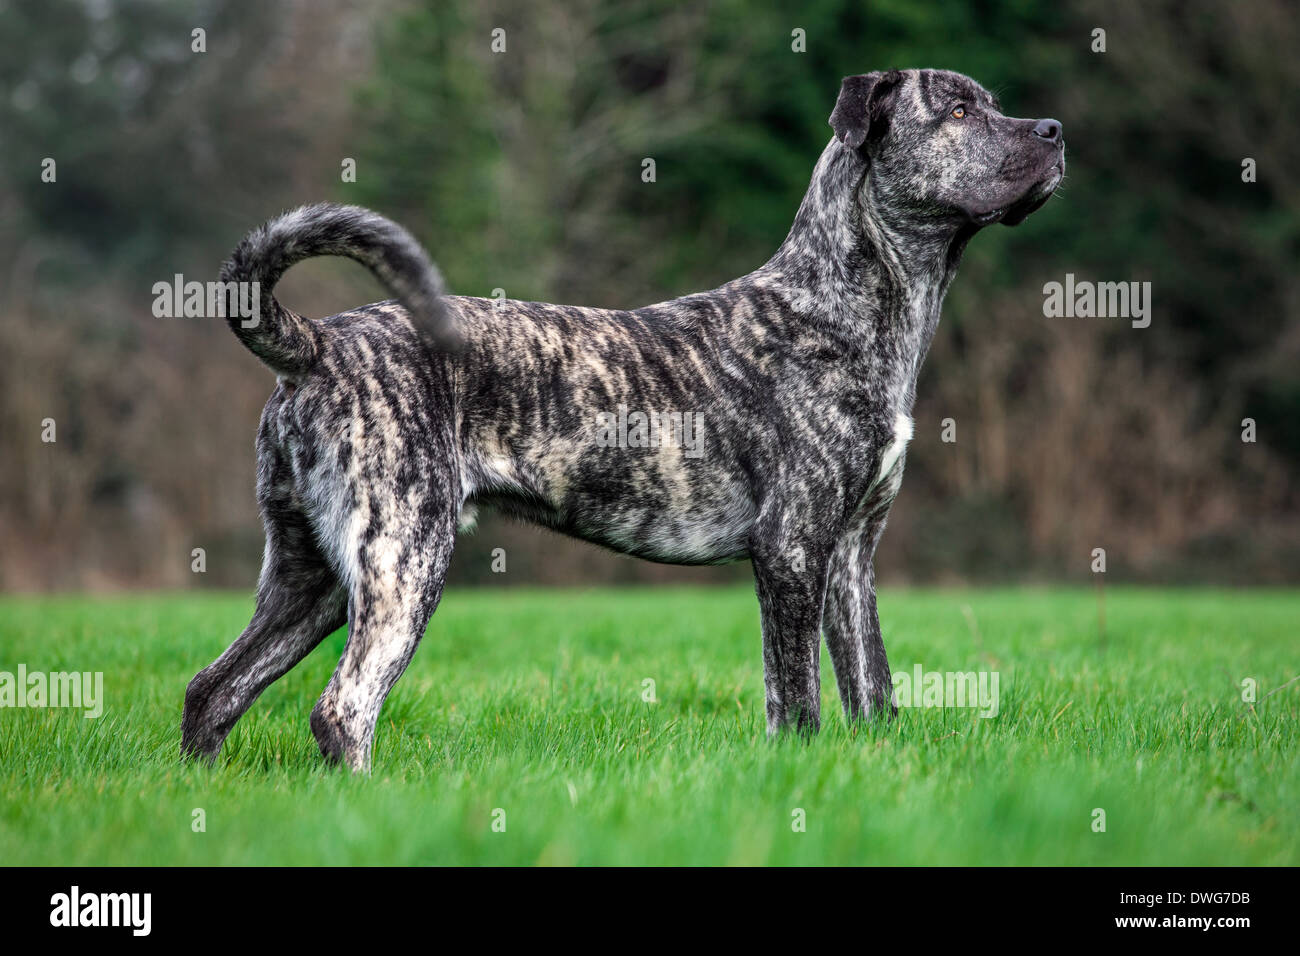 Cane Corso italiano, italiano la raza del perro en el jardín Foto de stock